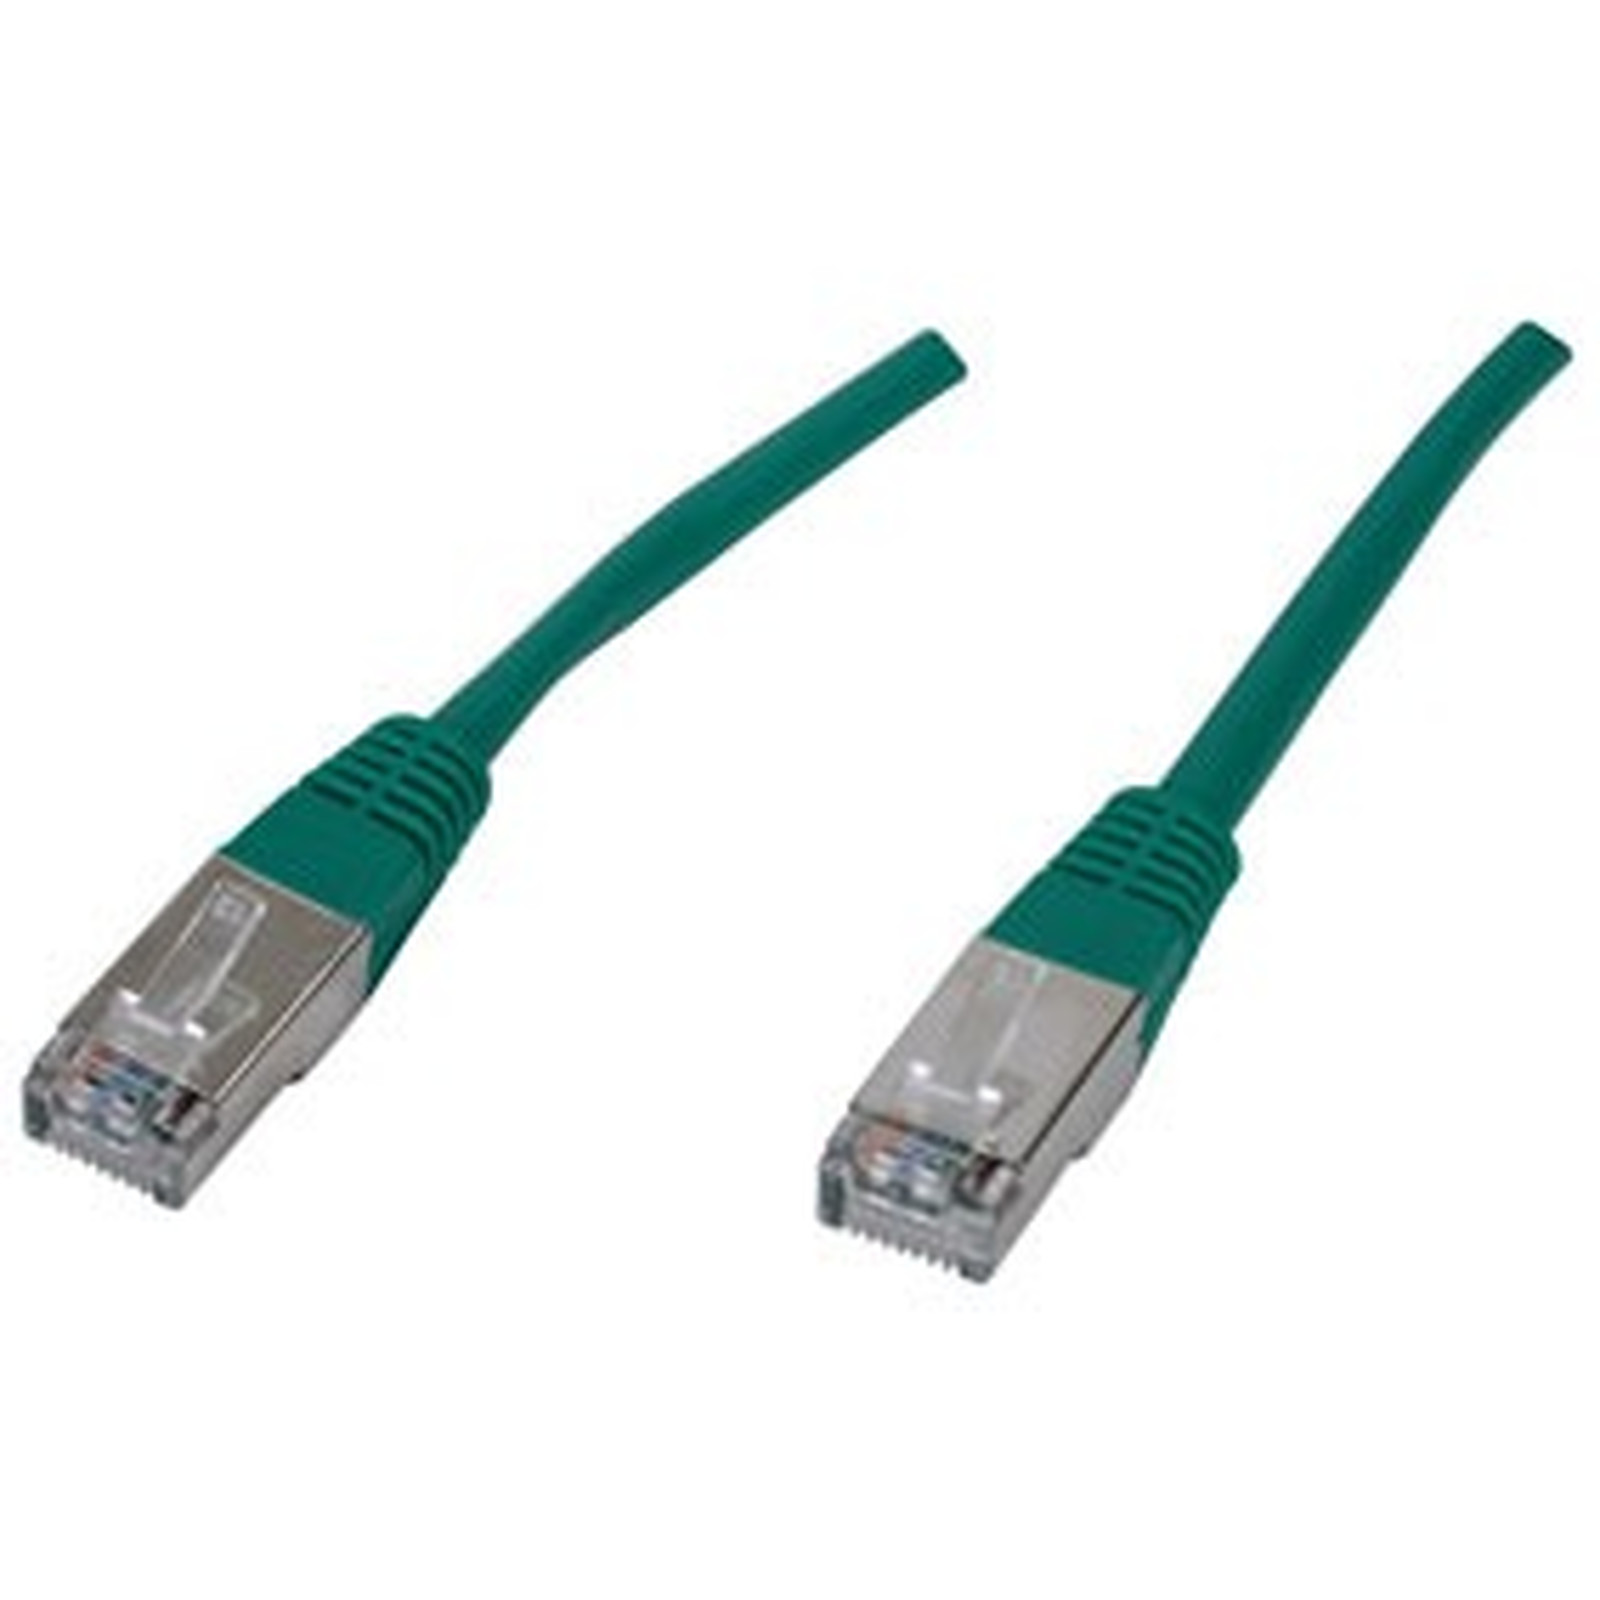 Cable RJ45 categorie 6 F/UTP 3 m (Vert) - Cable RJ45 Generique